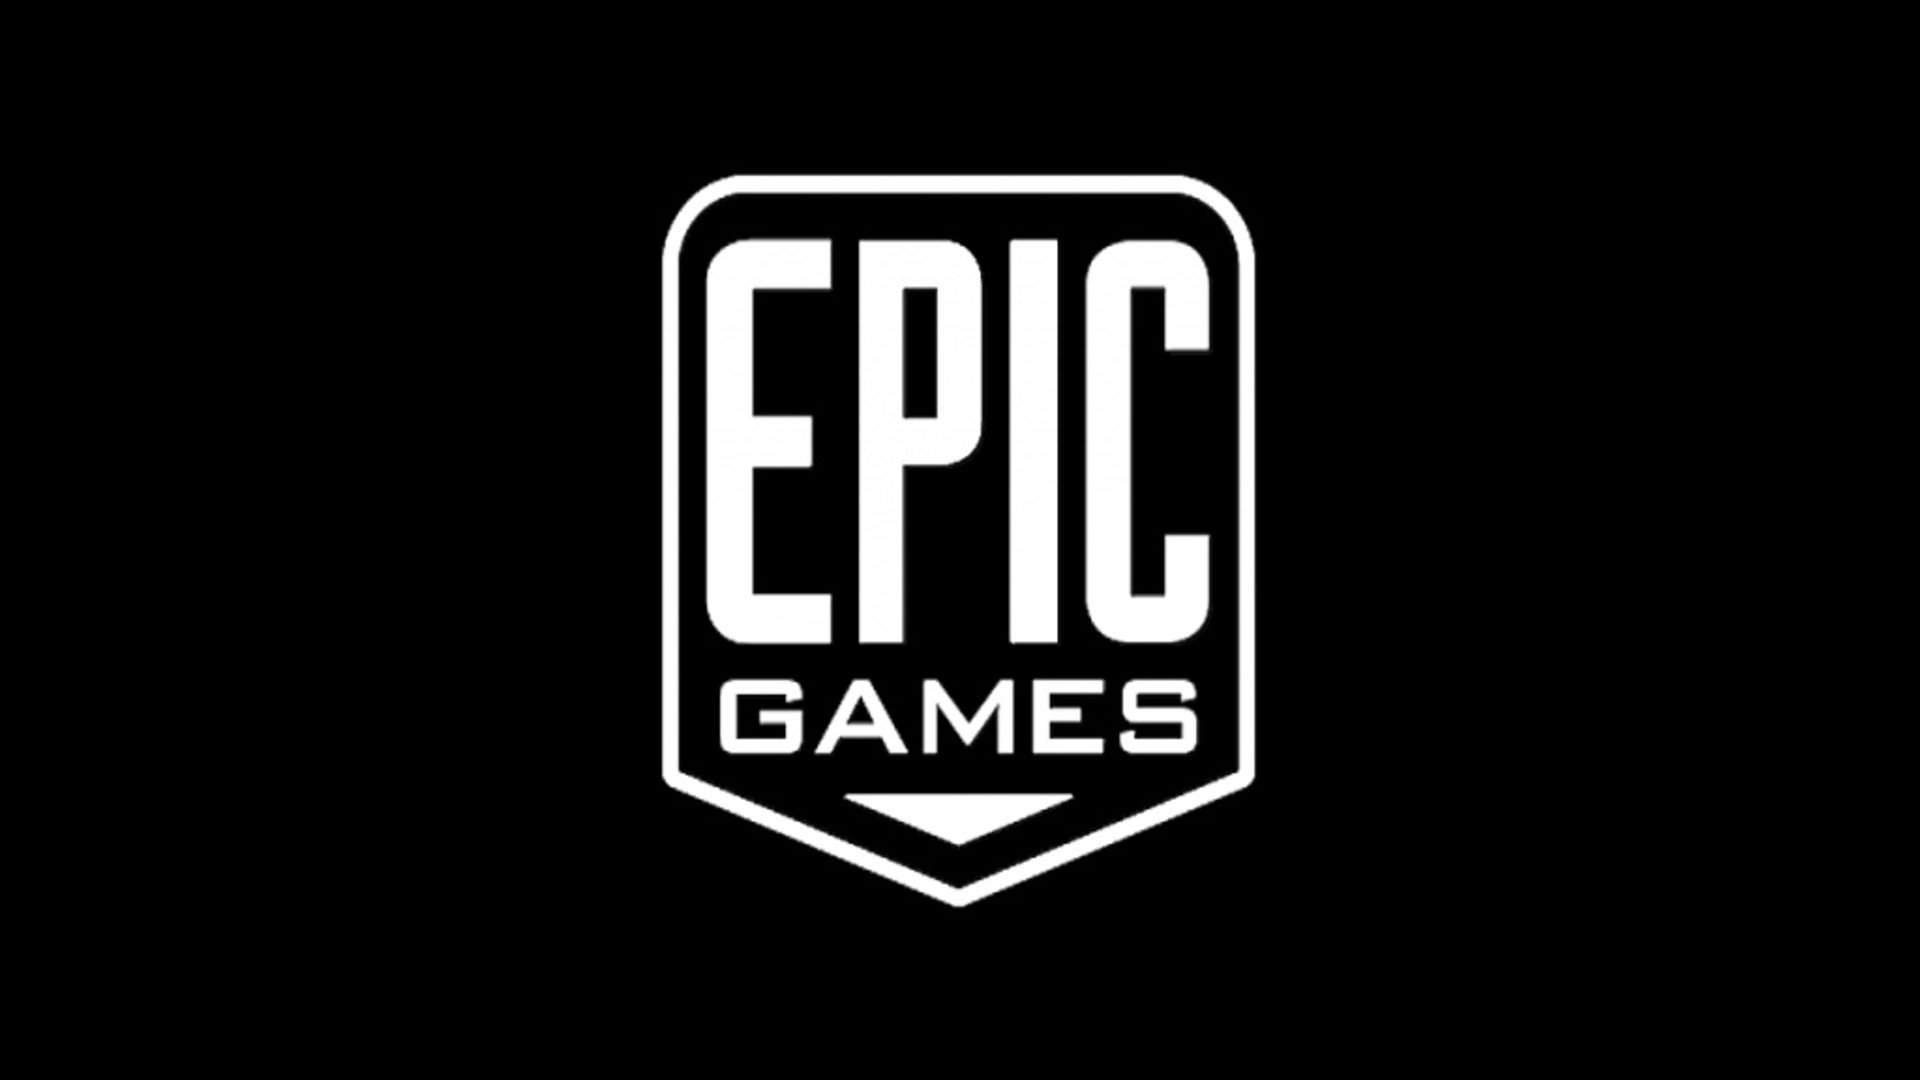 لوگو اپیک گیمز / Epic Games با رنگ سفید روی بک گراند سیاه